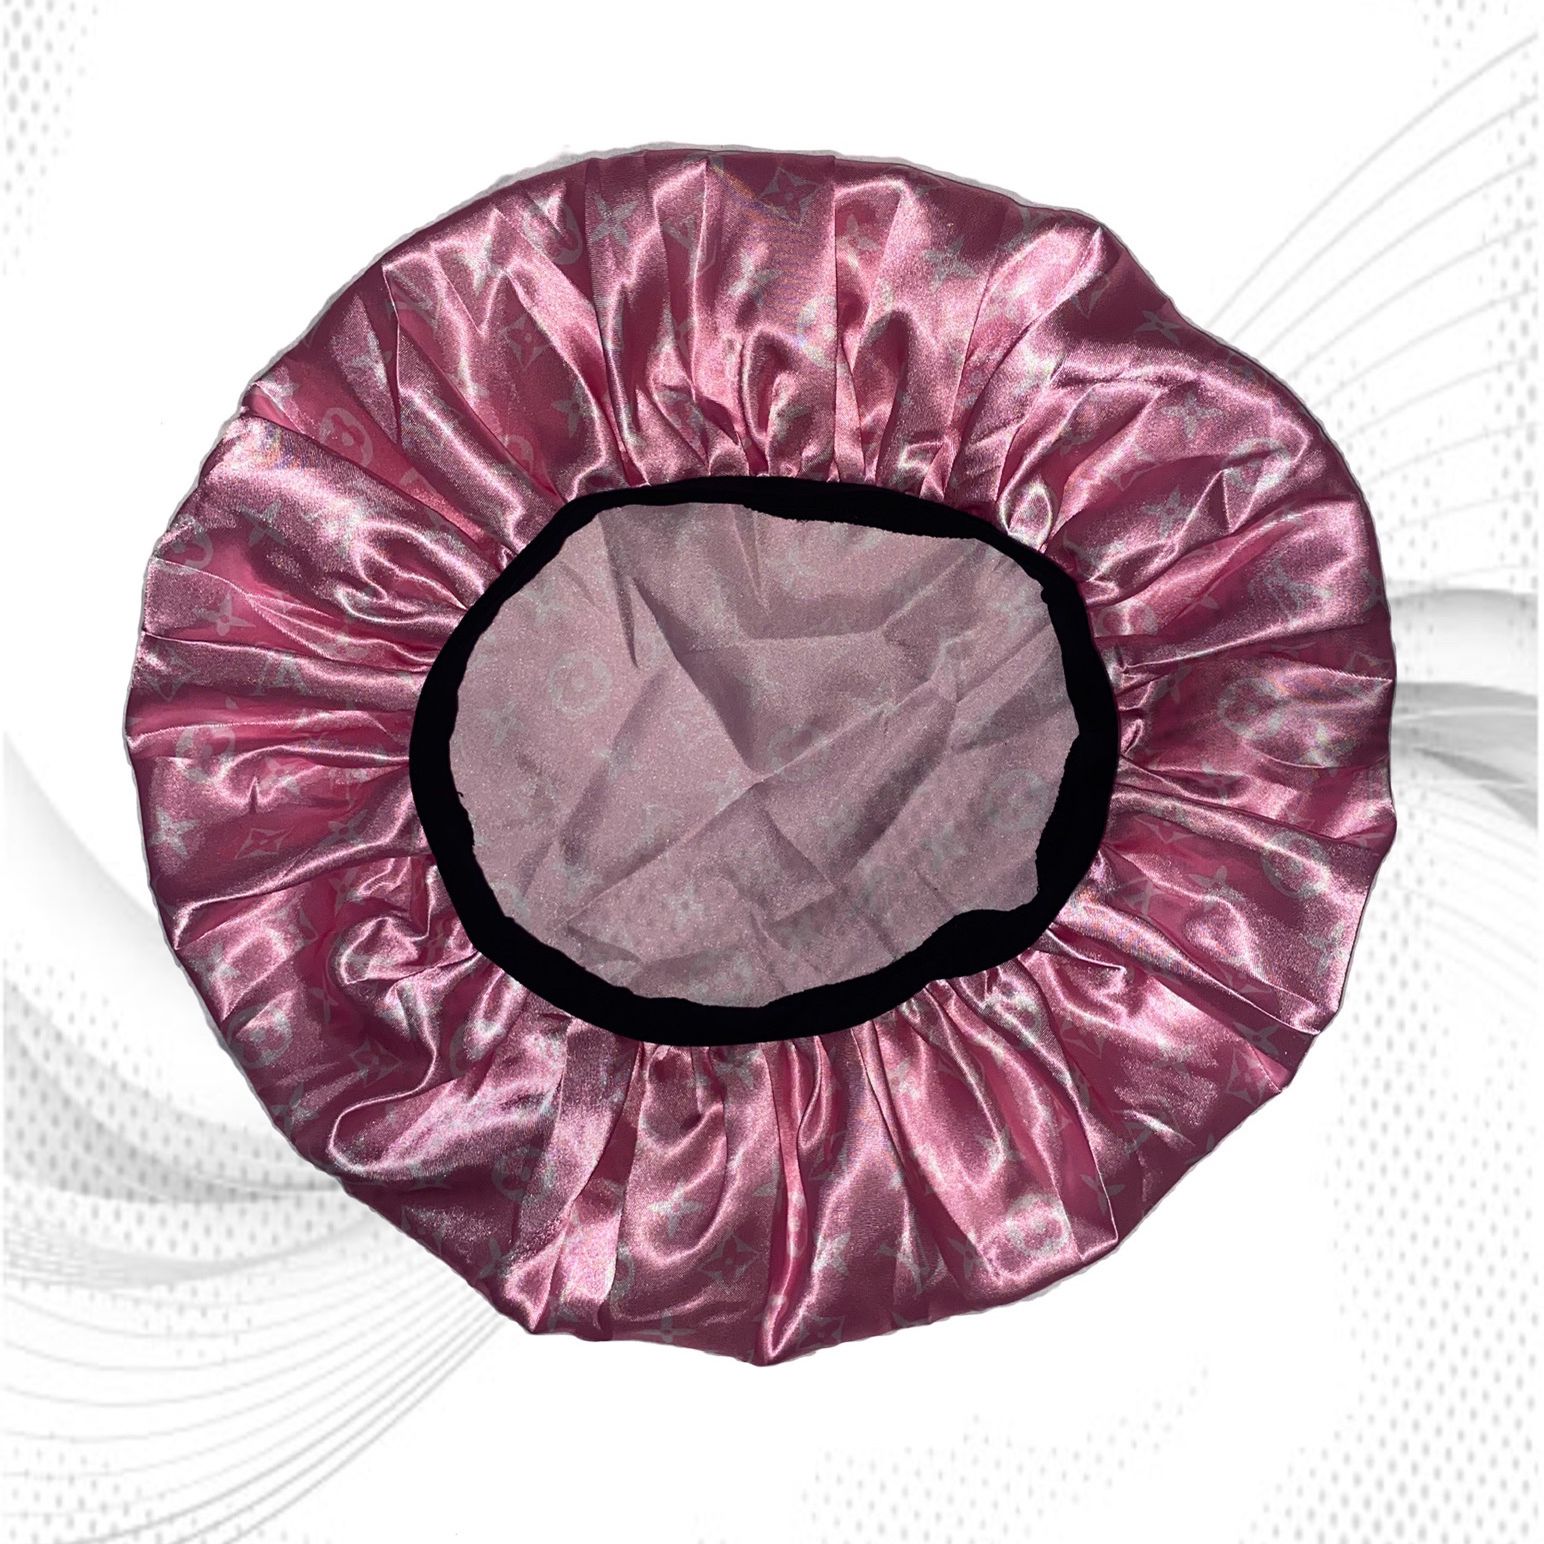 Pink Vault - Louis Vuitton inspired Bonnet 🤍 Silky Satin Sleeping